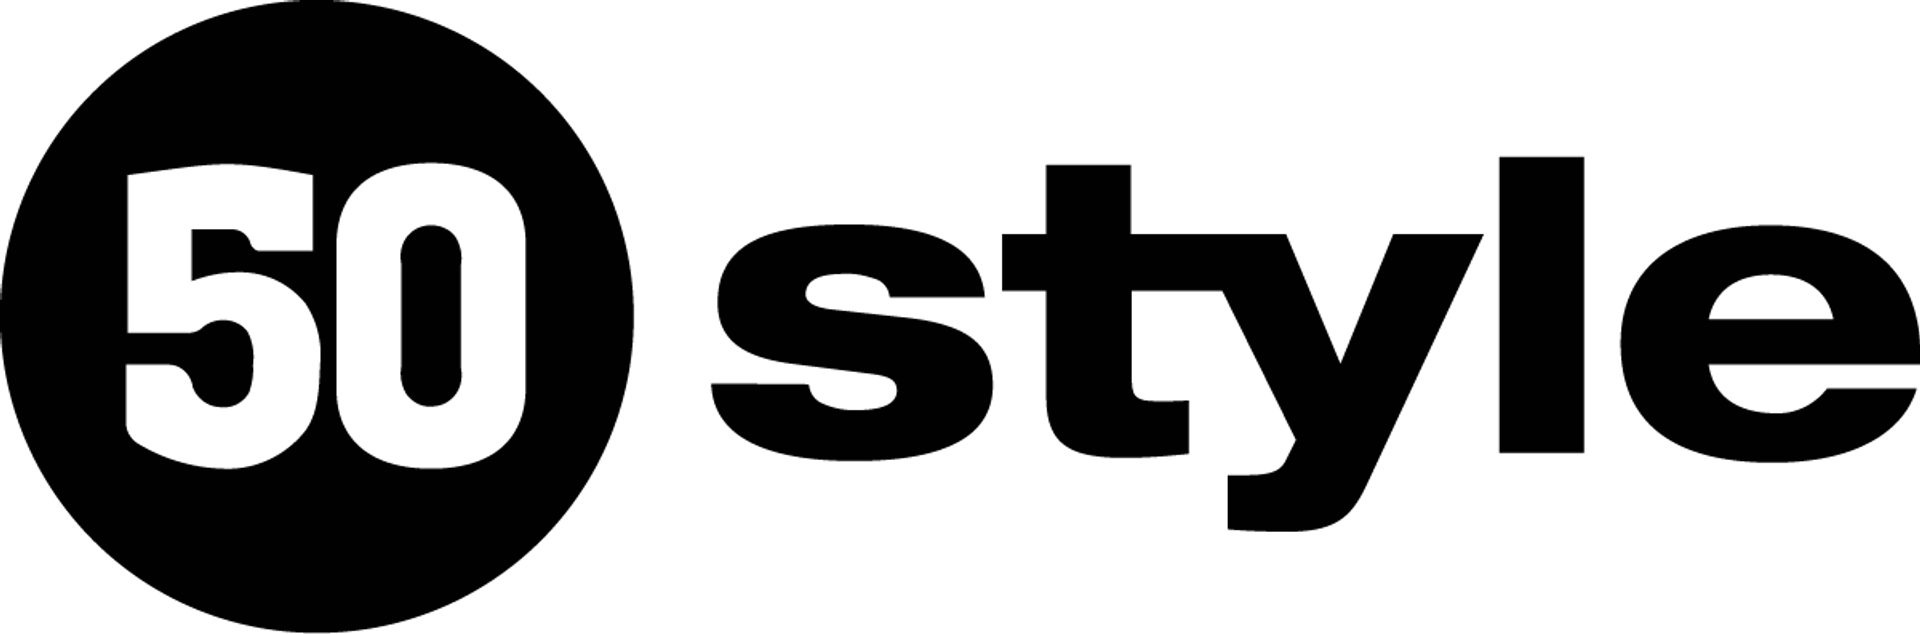 50 STYLE logo